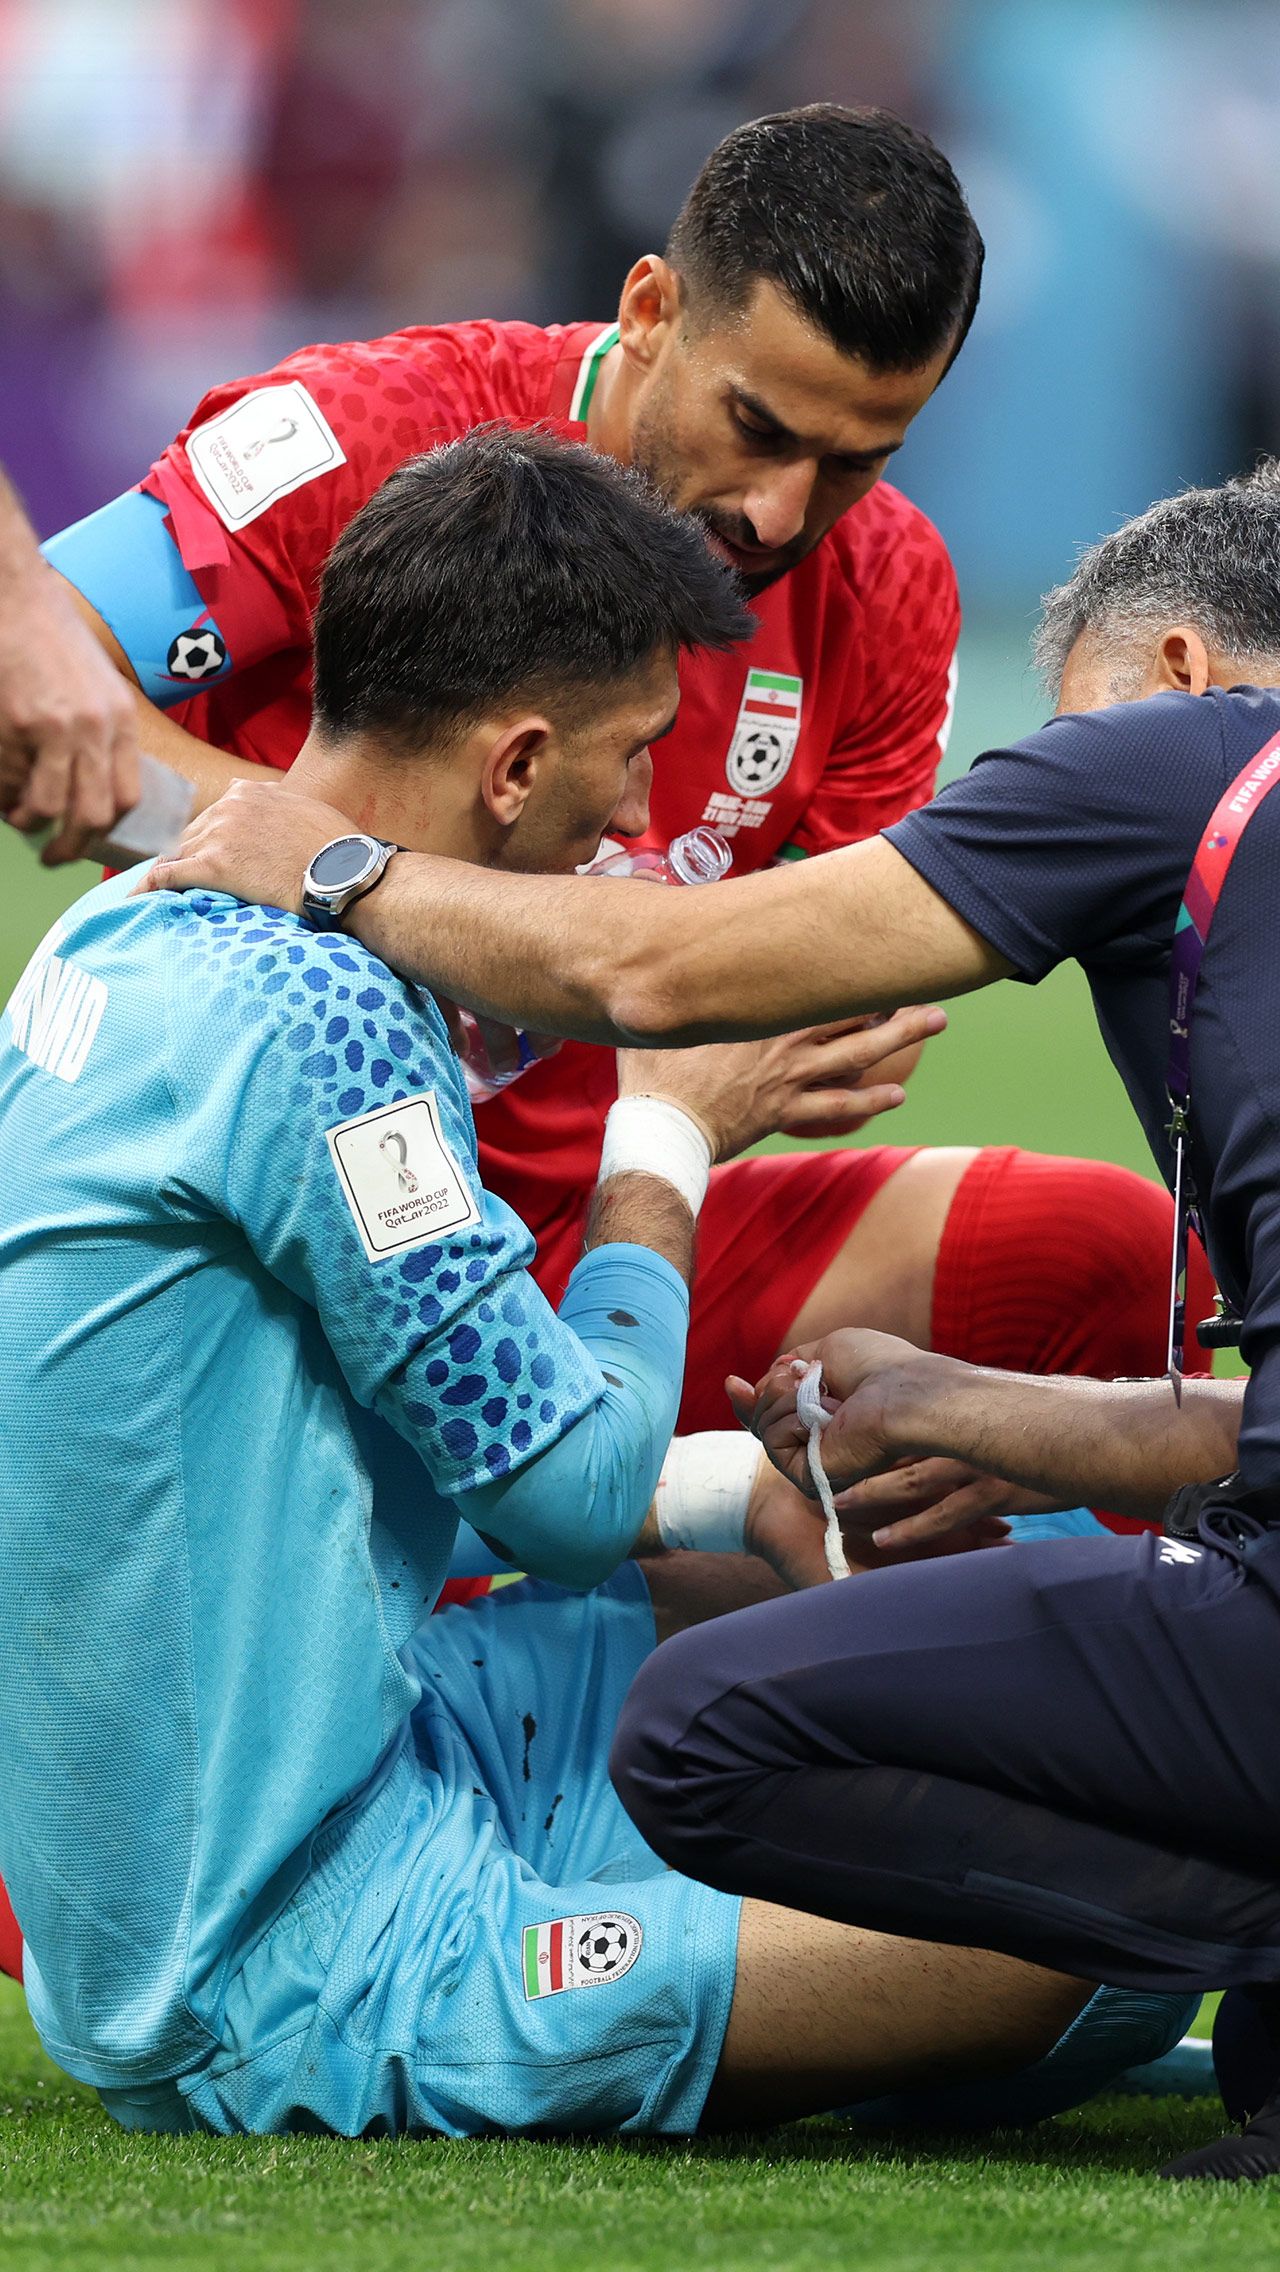 Вратарь иранской сборной также оказался вне игры во время встречи с Англией. Уже на восьмой минуте Алиреза Беиранванд столкнулся с защитником своей команды и получил серьёзную травму. В итоге он ненадолго потерял сознание. А потом был заменён.